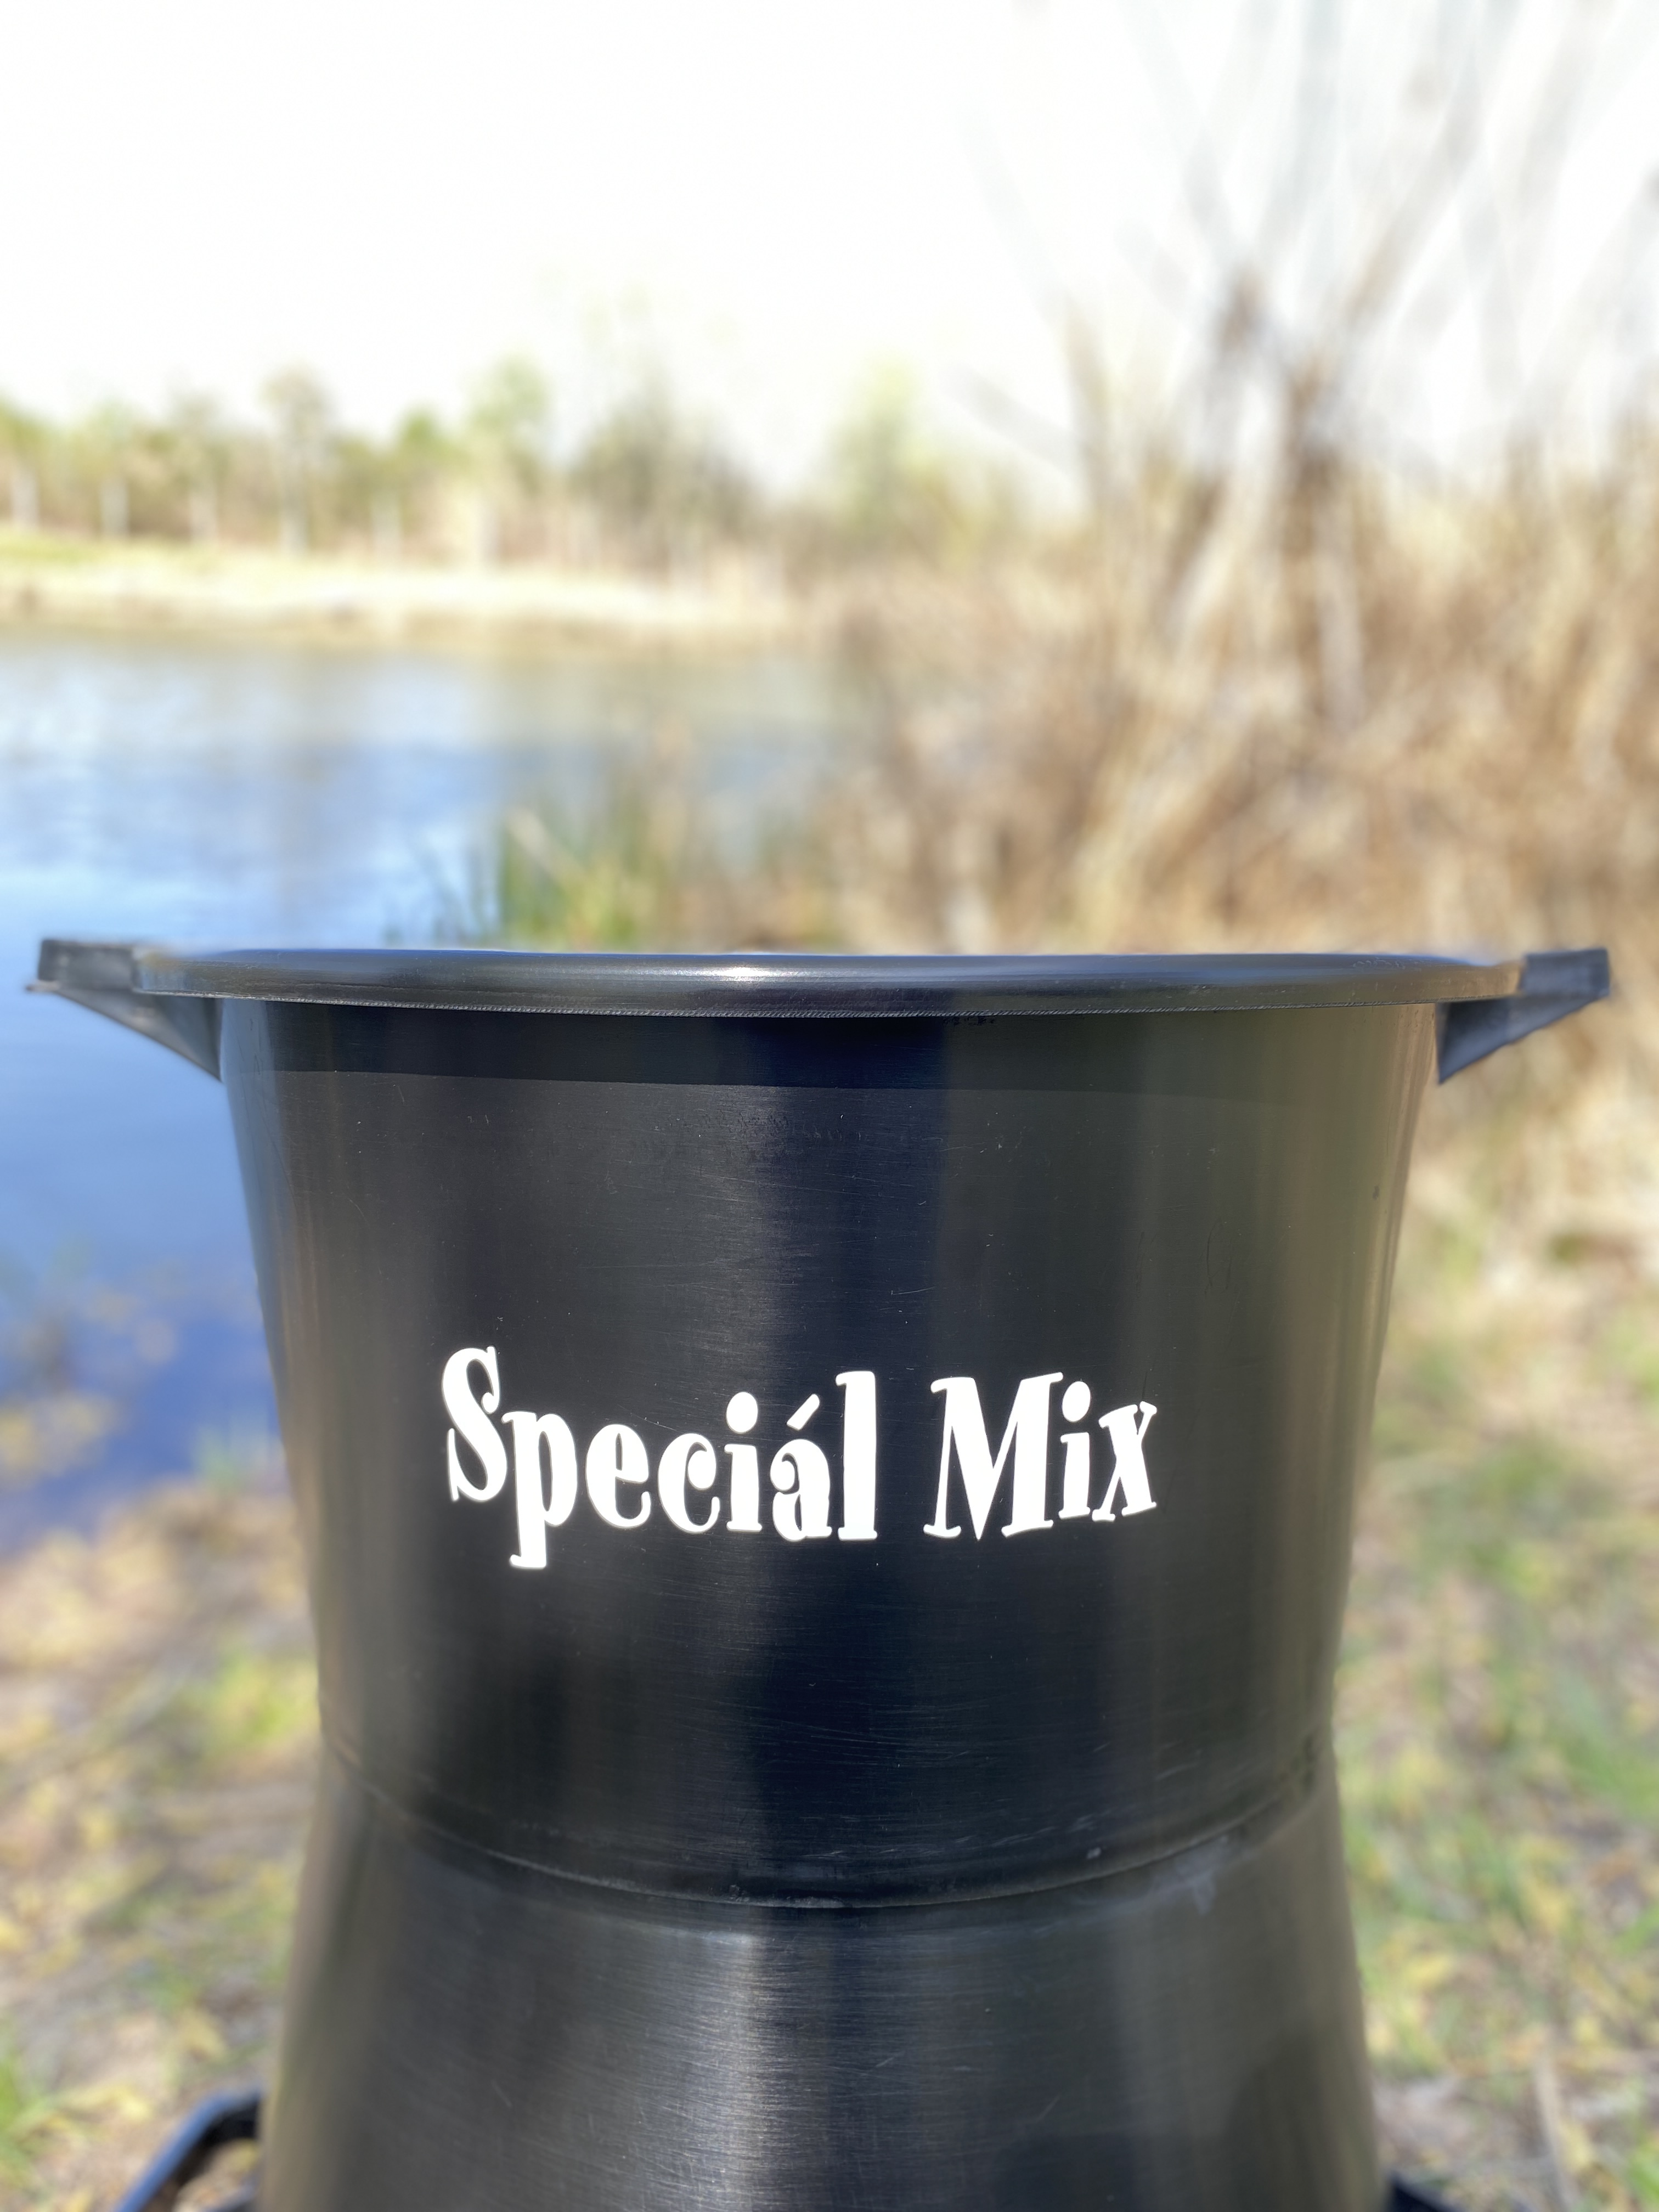 Speciál mix Horgász Dézsa 30 liter